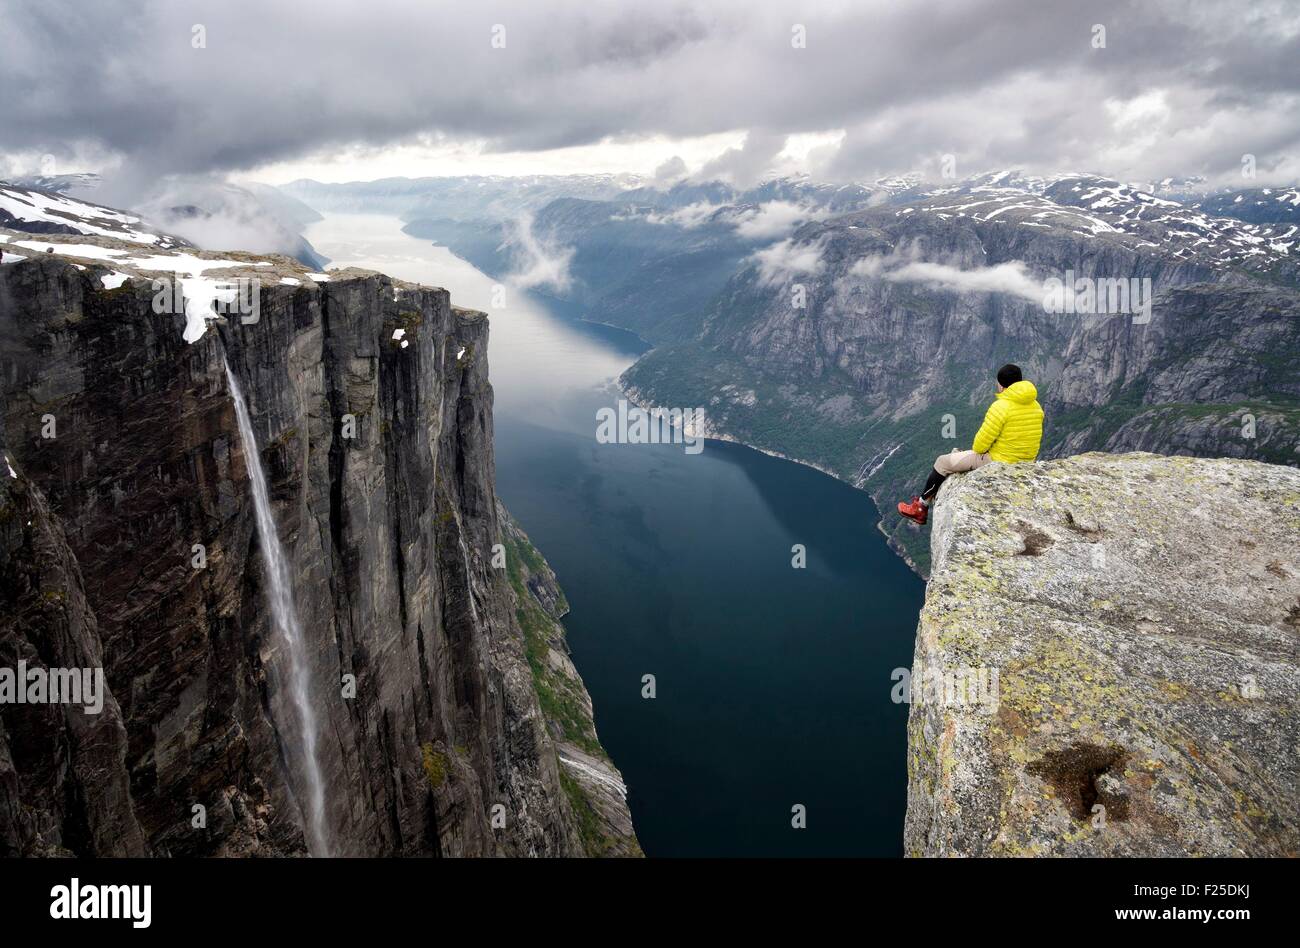 Norvegia, Rogaland, Lysefjord, Kjerag (Kiragg), escursionista guardare il fiordo 1000m al di sotto di Foto Stock